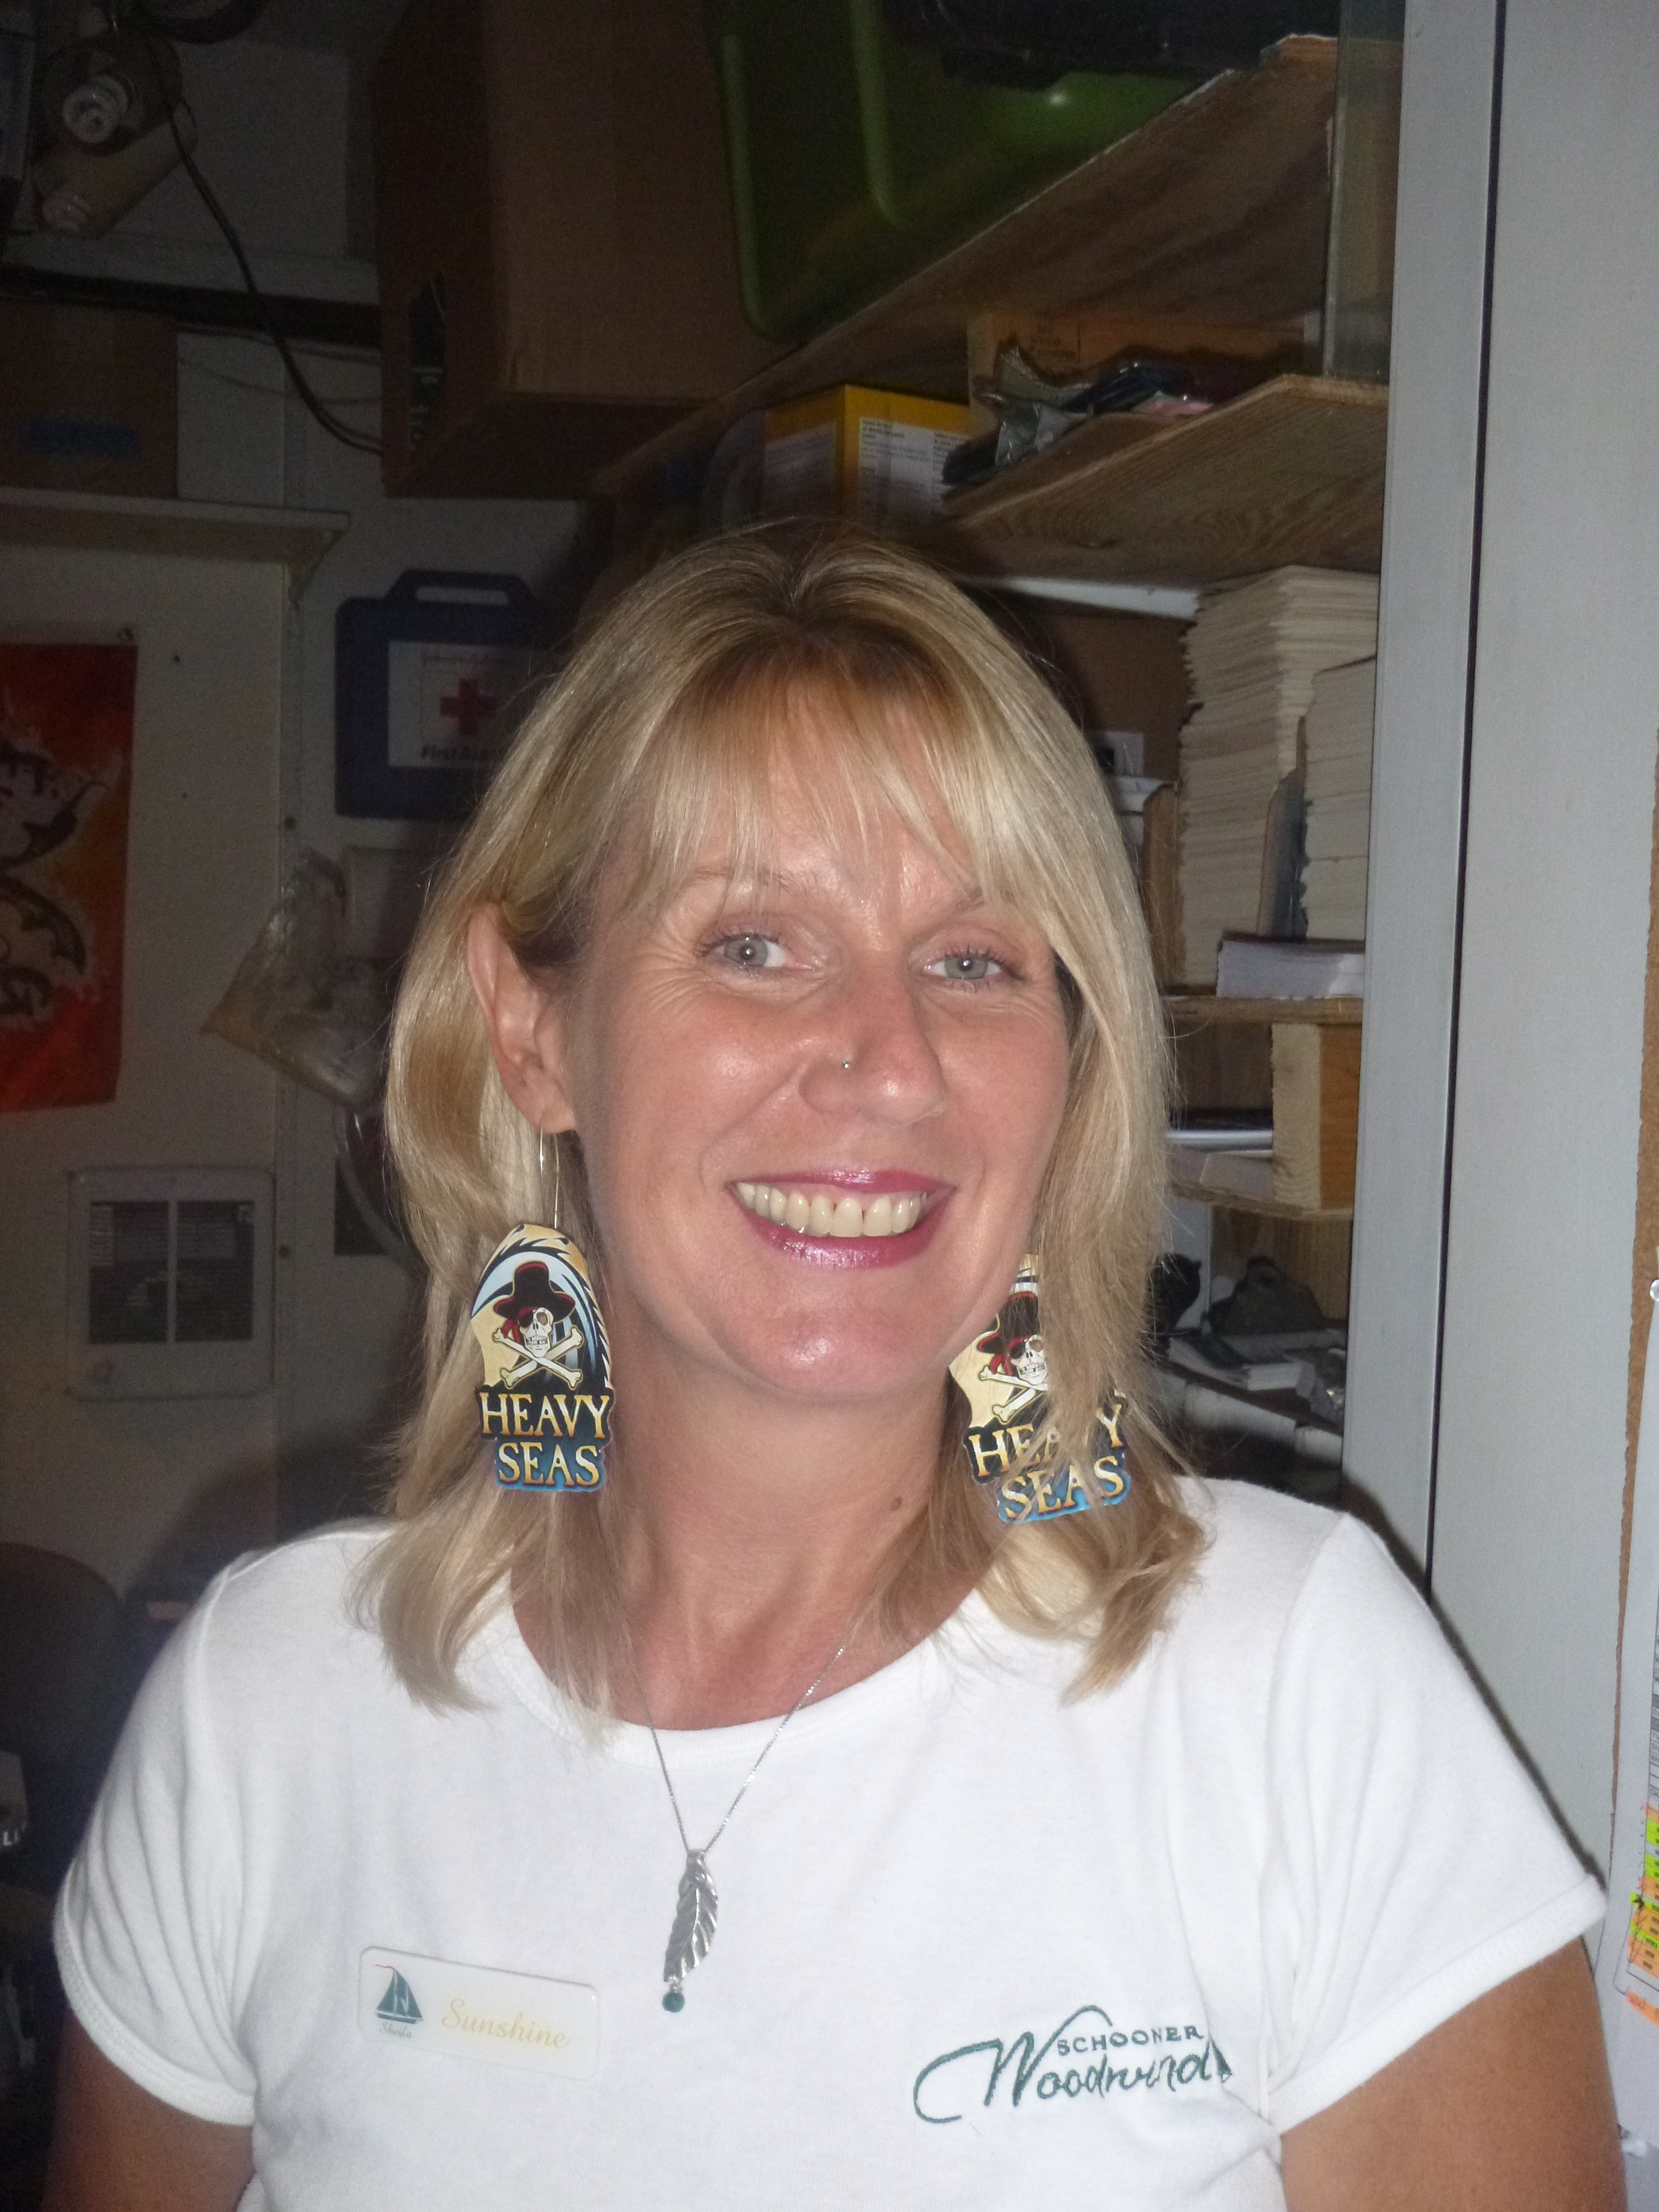 Sheila from customer service sporting her custom Heavy Seas earrings!!